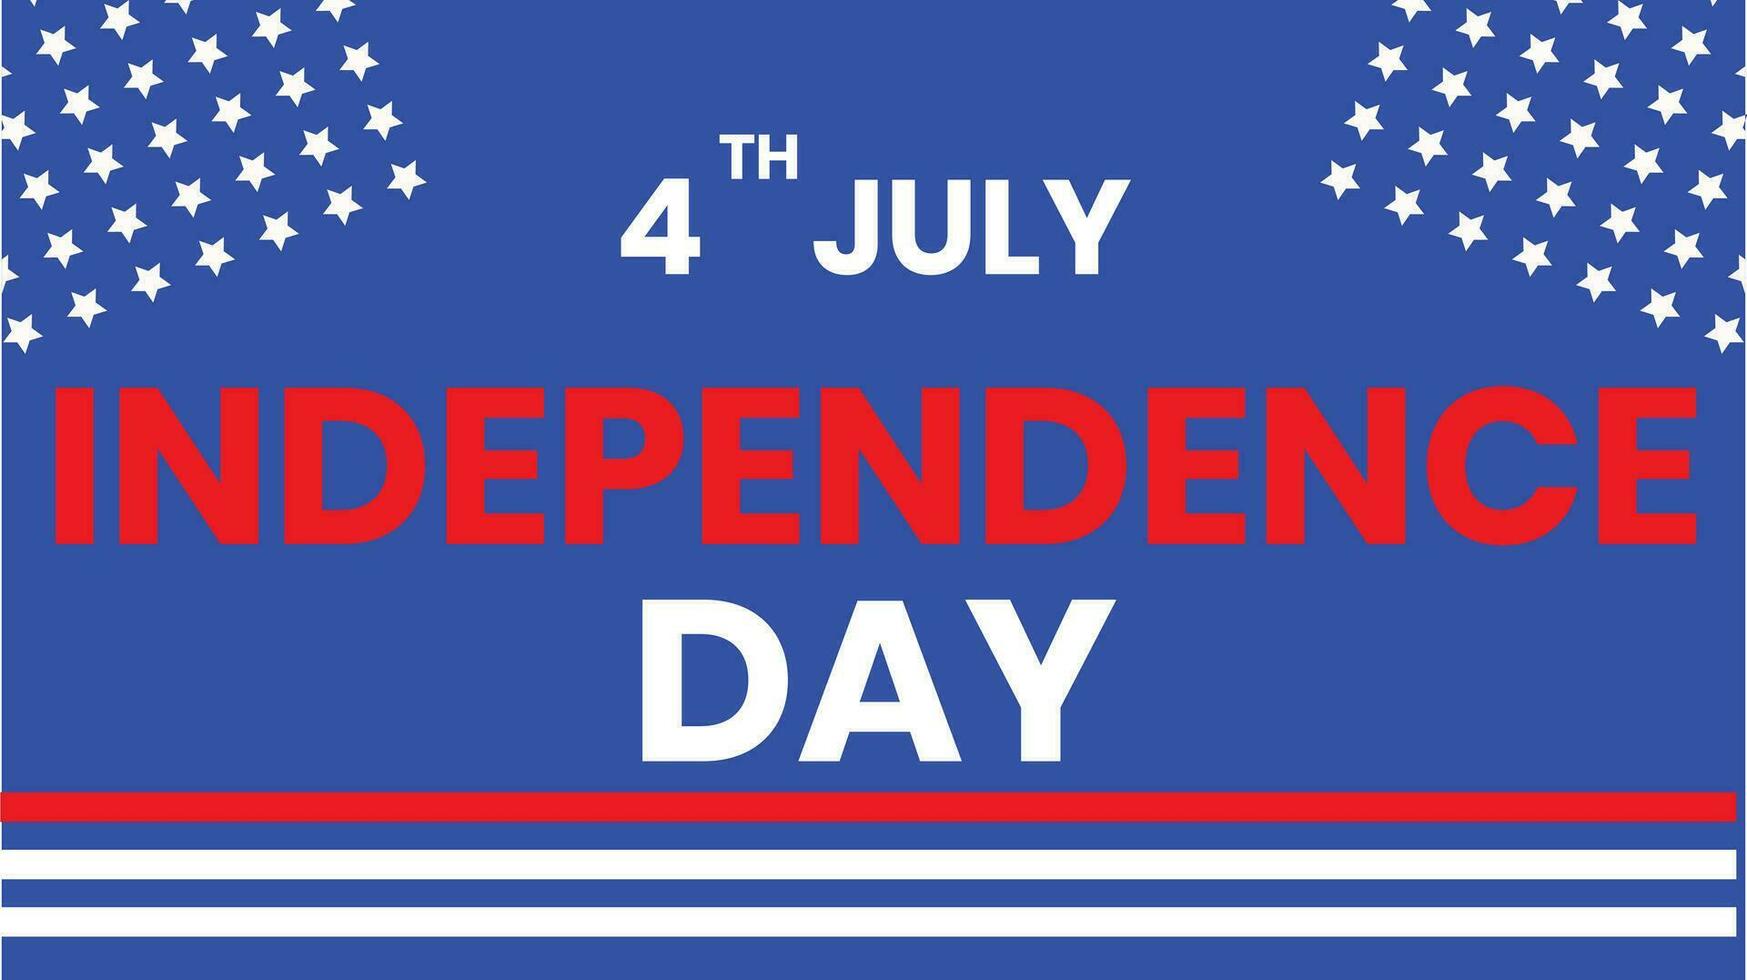 buona festa dell'indipendenza 4 luglio vettore